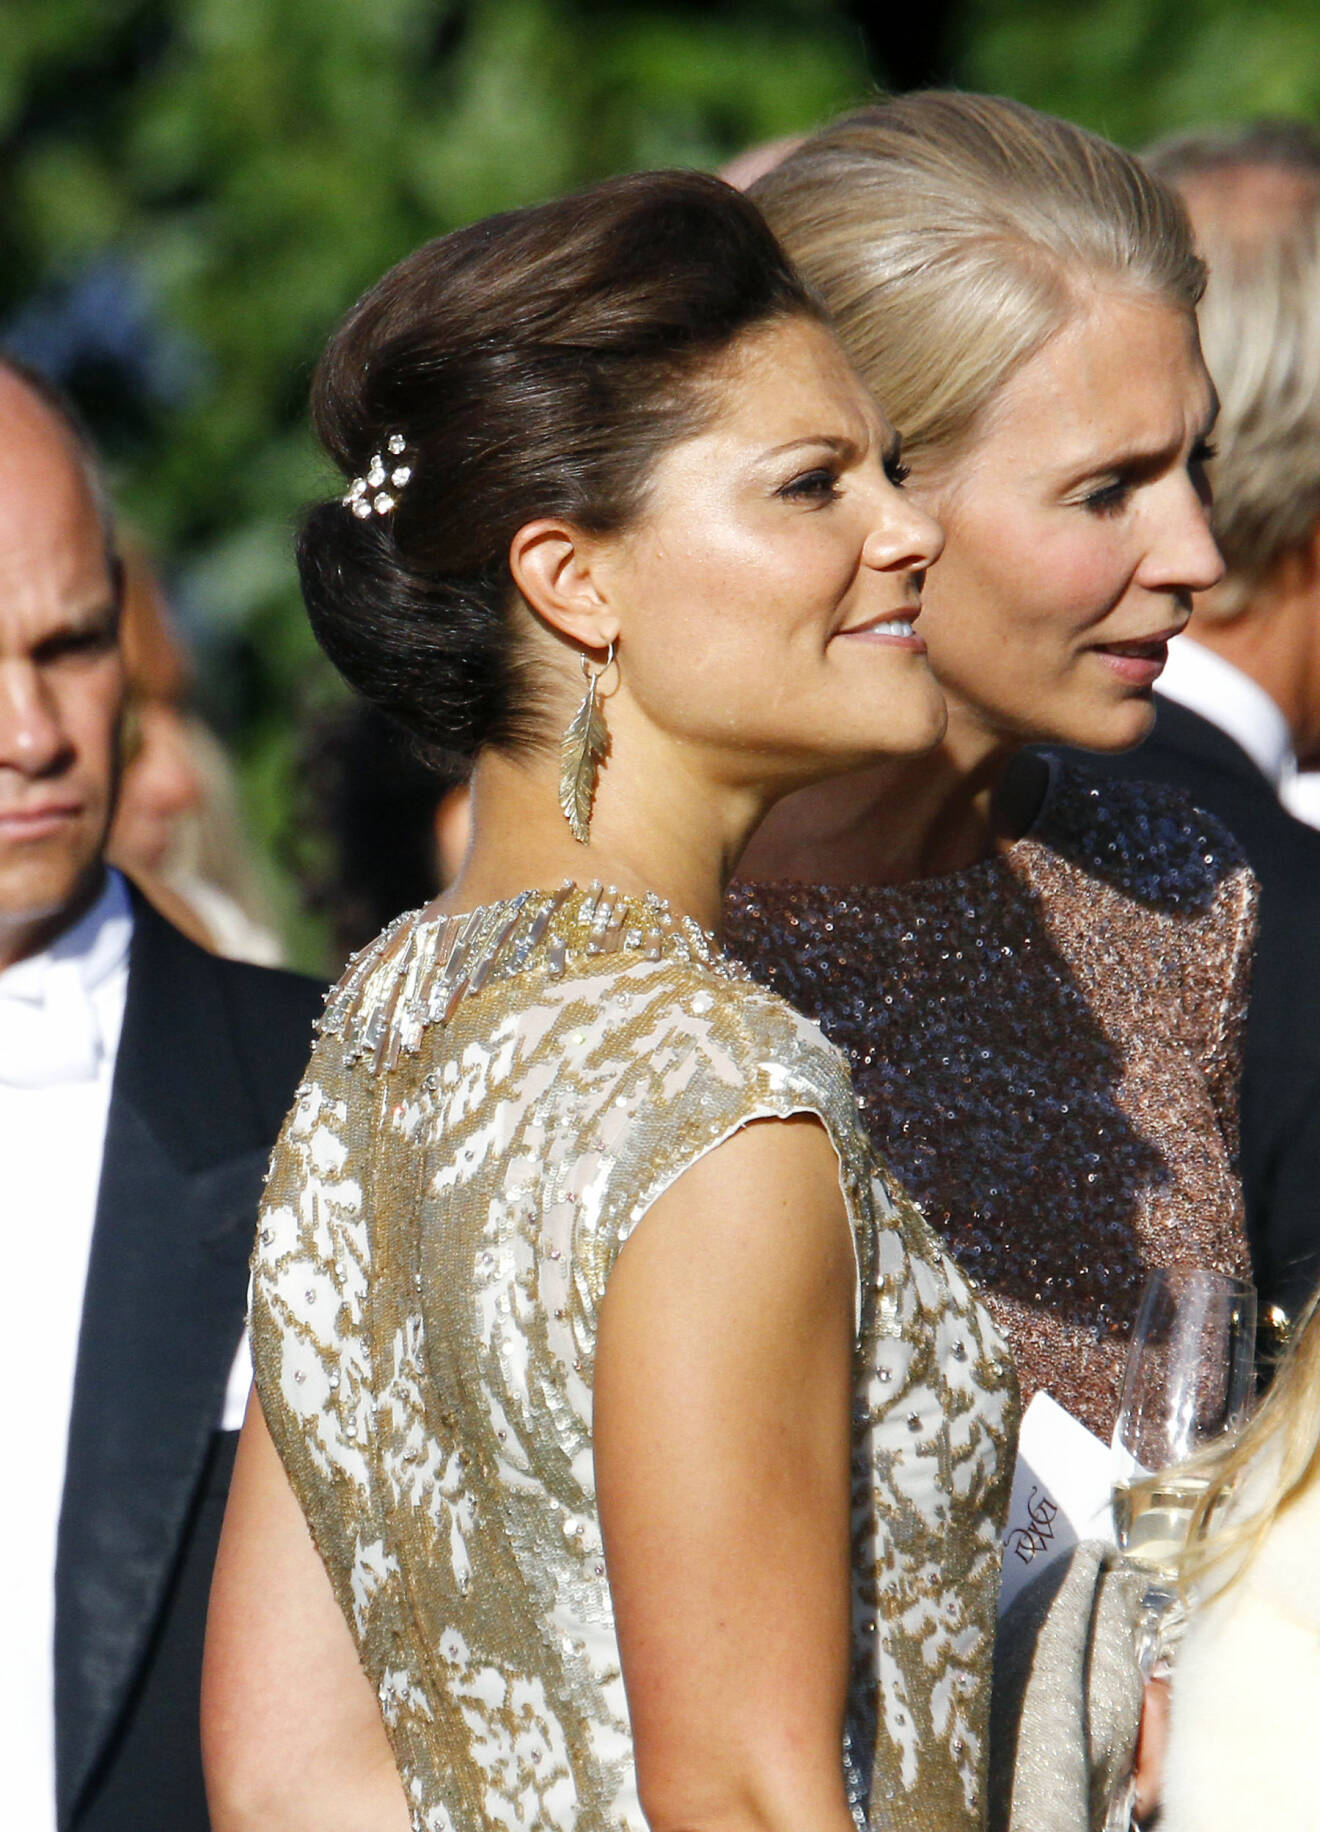 Kronprinsessan Victoria vid kusinen Gustaf Magnusons bröllop. Guldglittrande klänning och vackra accessoarer